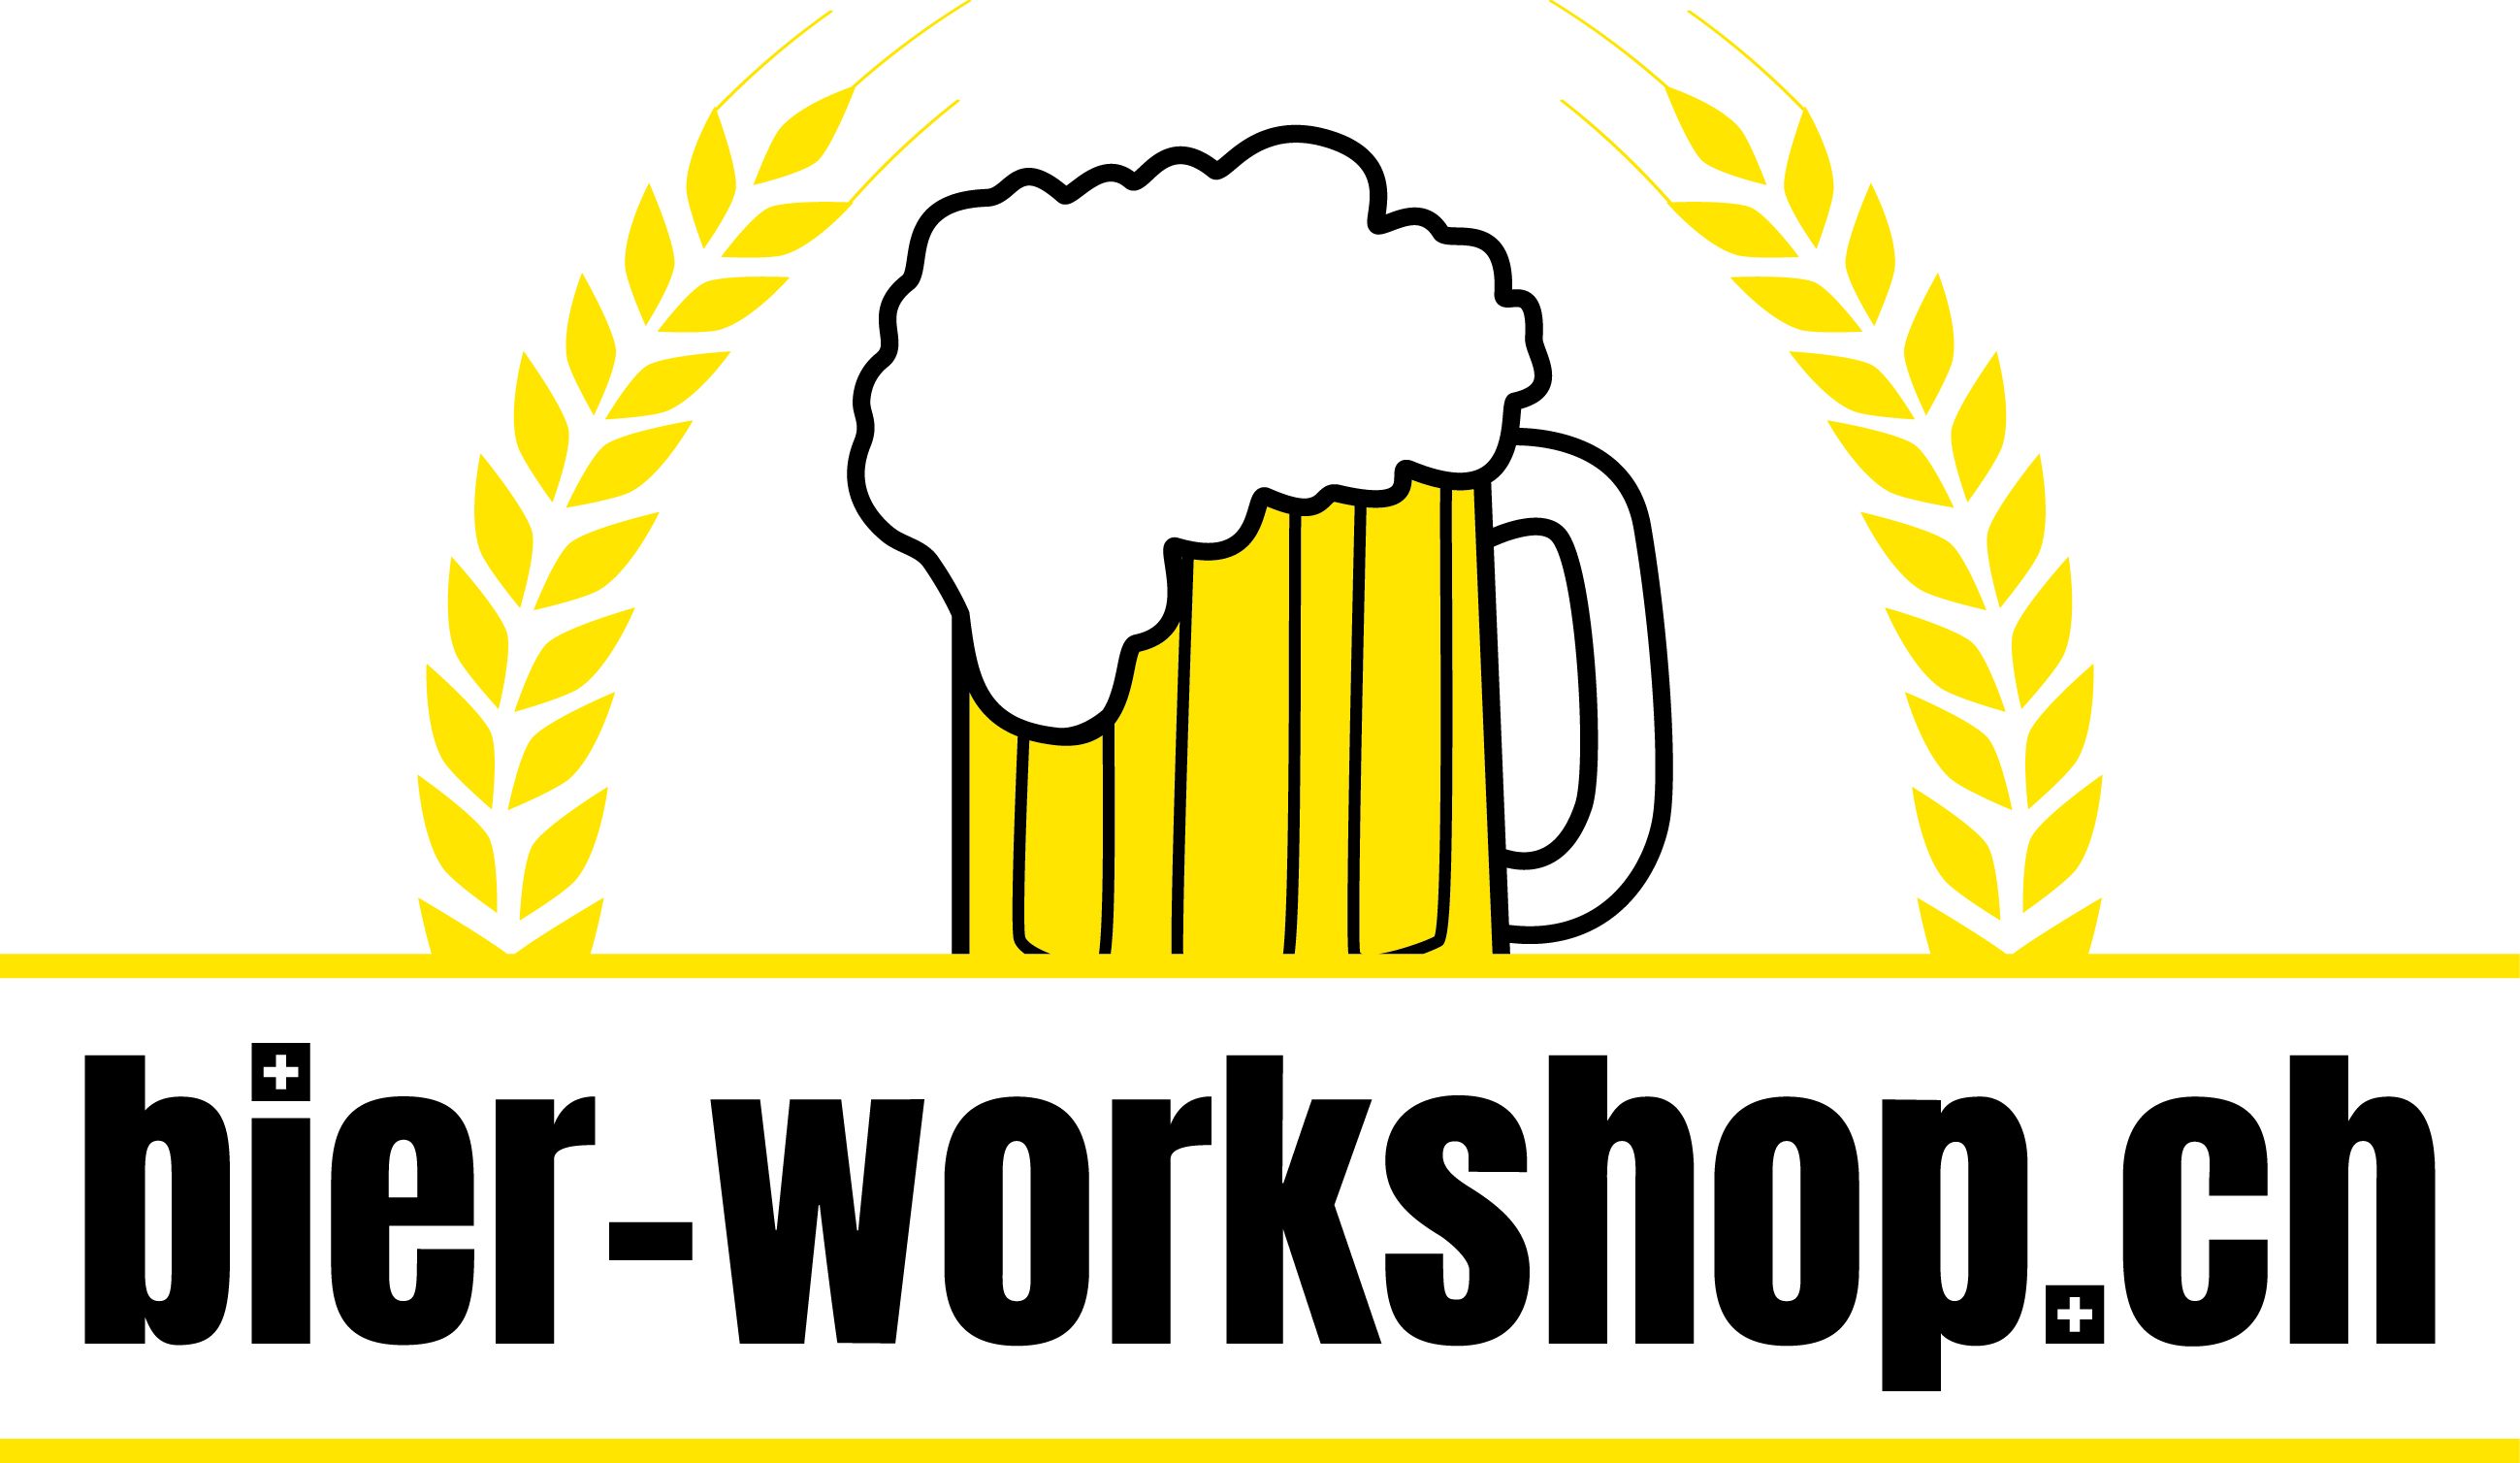 bier-workshop.ch